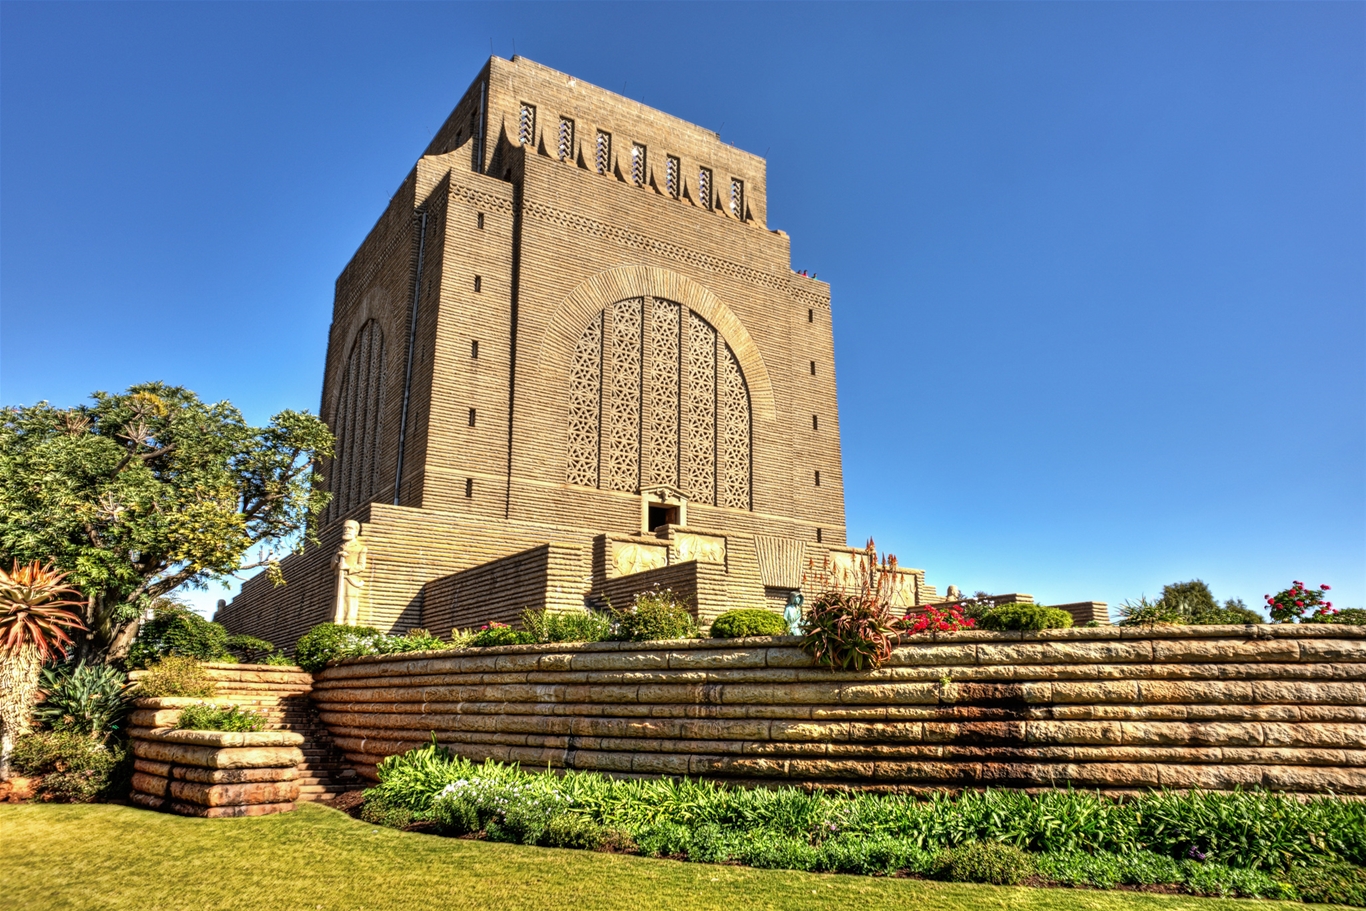 Đài tượng niệm Voortrekker là một trong những địa điểm tham quan nổi bật khi đến Johannesburg